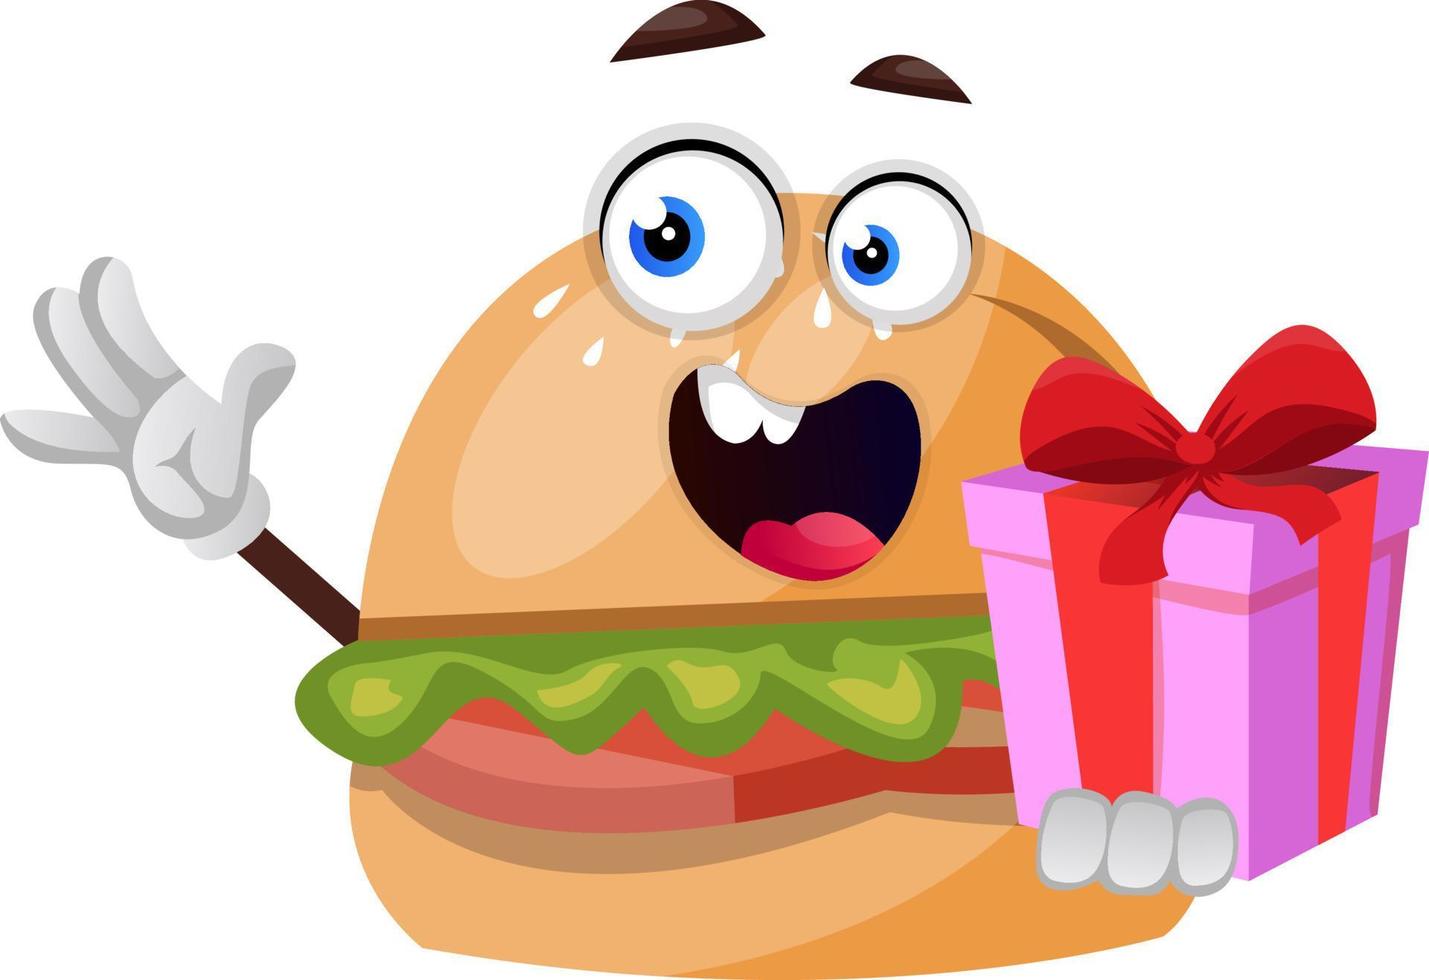 Burger mit Geburtstagsgeschenk, Illustration, Vektor auf weißem Hintergrund.